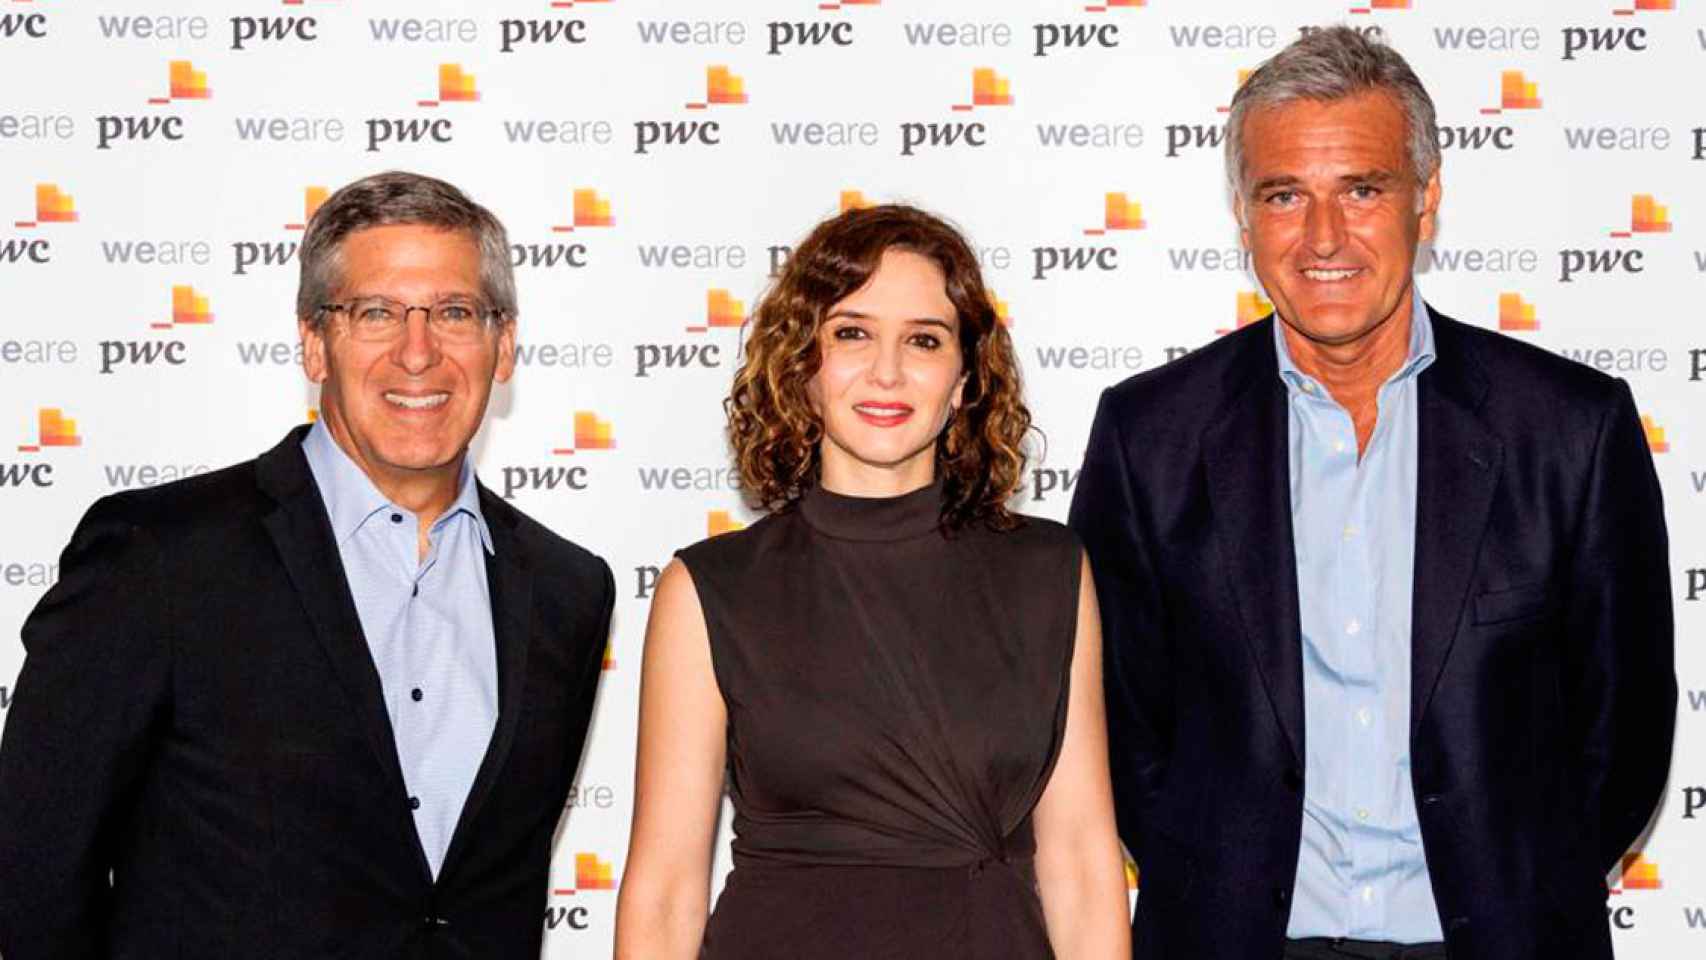 Bob Moritz (i), presidente global de PwC, Isabel Díaz Ayuso (c), presidenta de la Comunidad de Madrid, y Gonzalo Sánchez (d), presidente de PwC en España / PwC